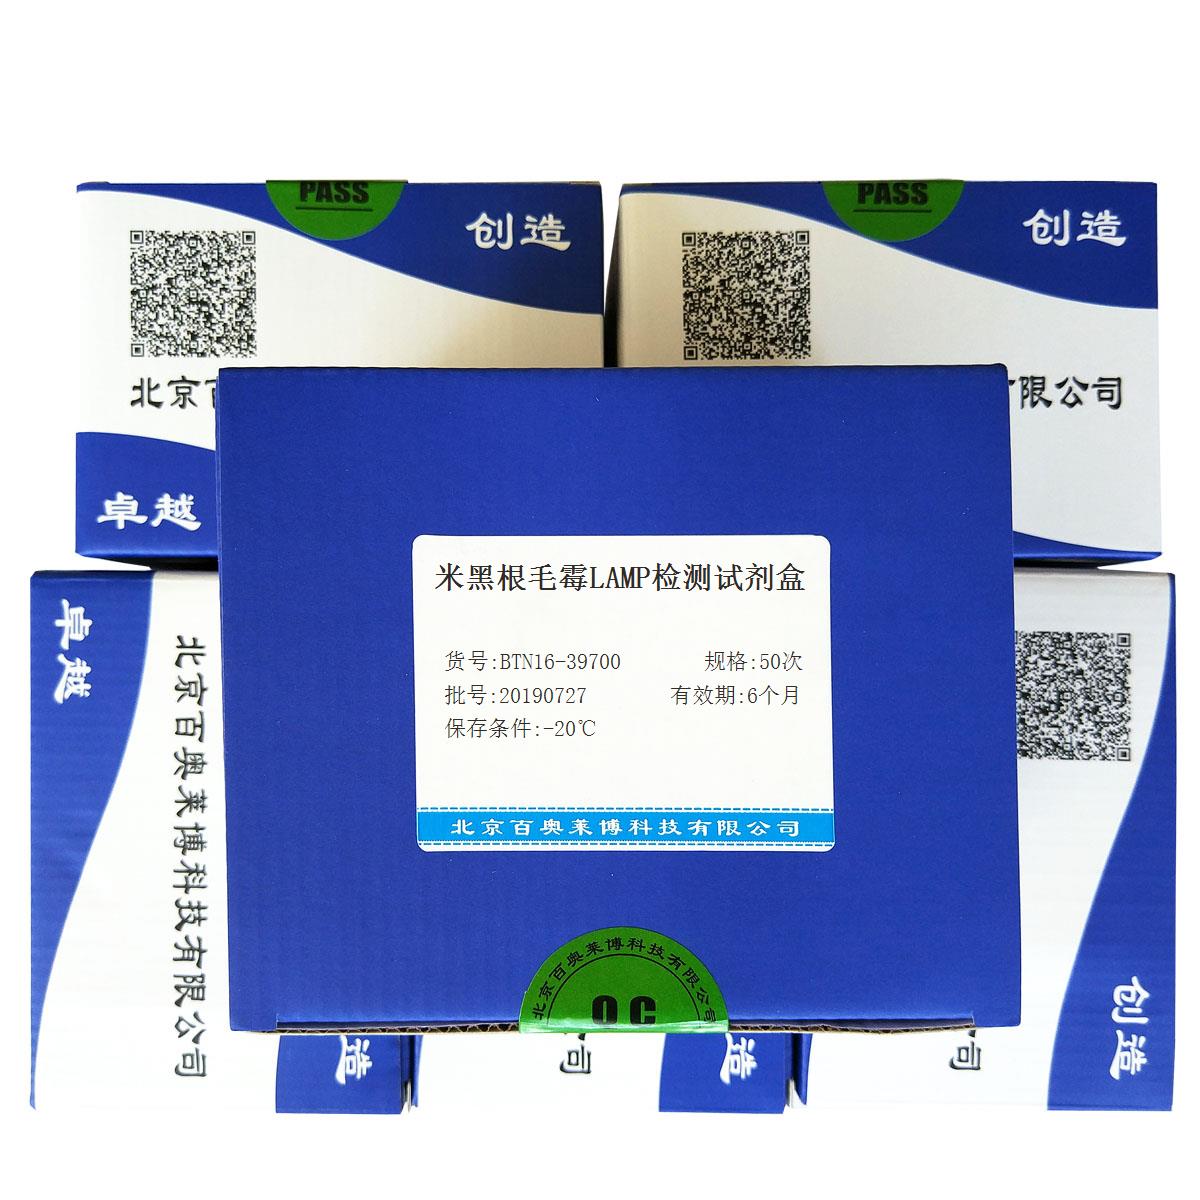 米黑根毛霉LAMP检测试剂盒北京品牌